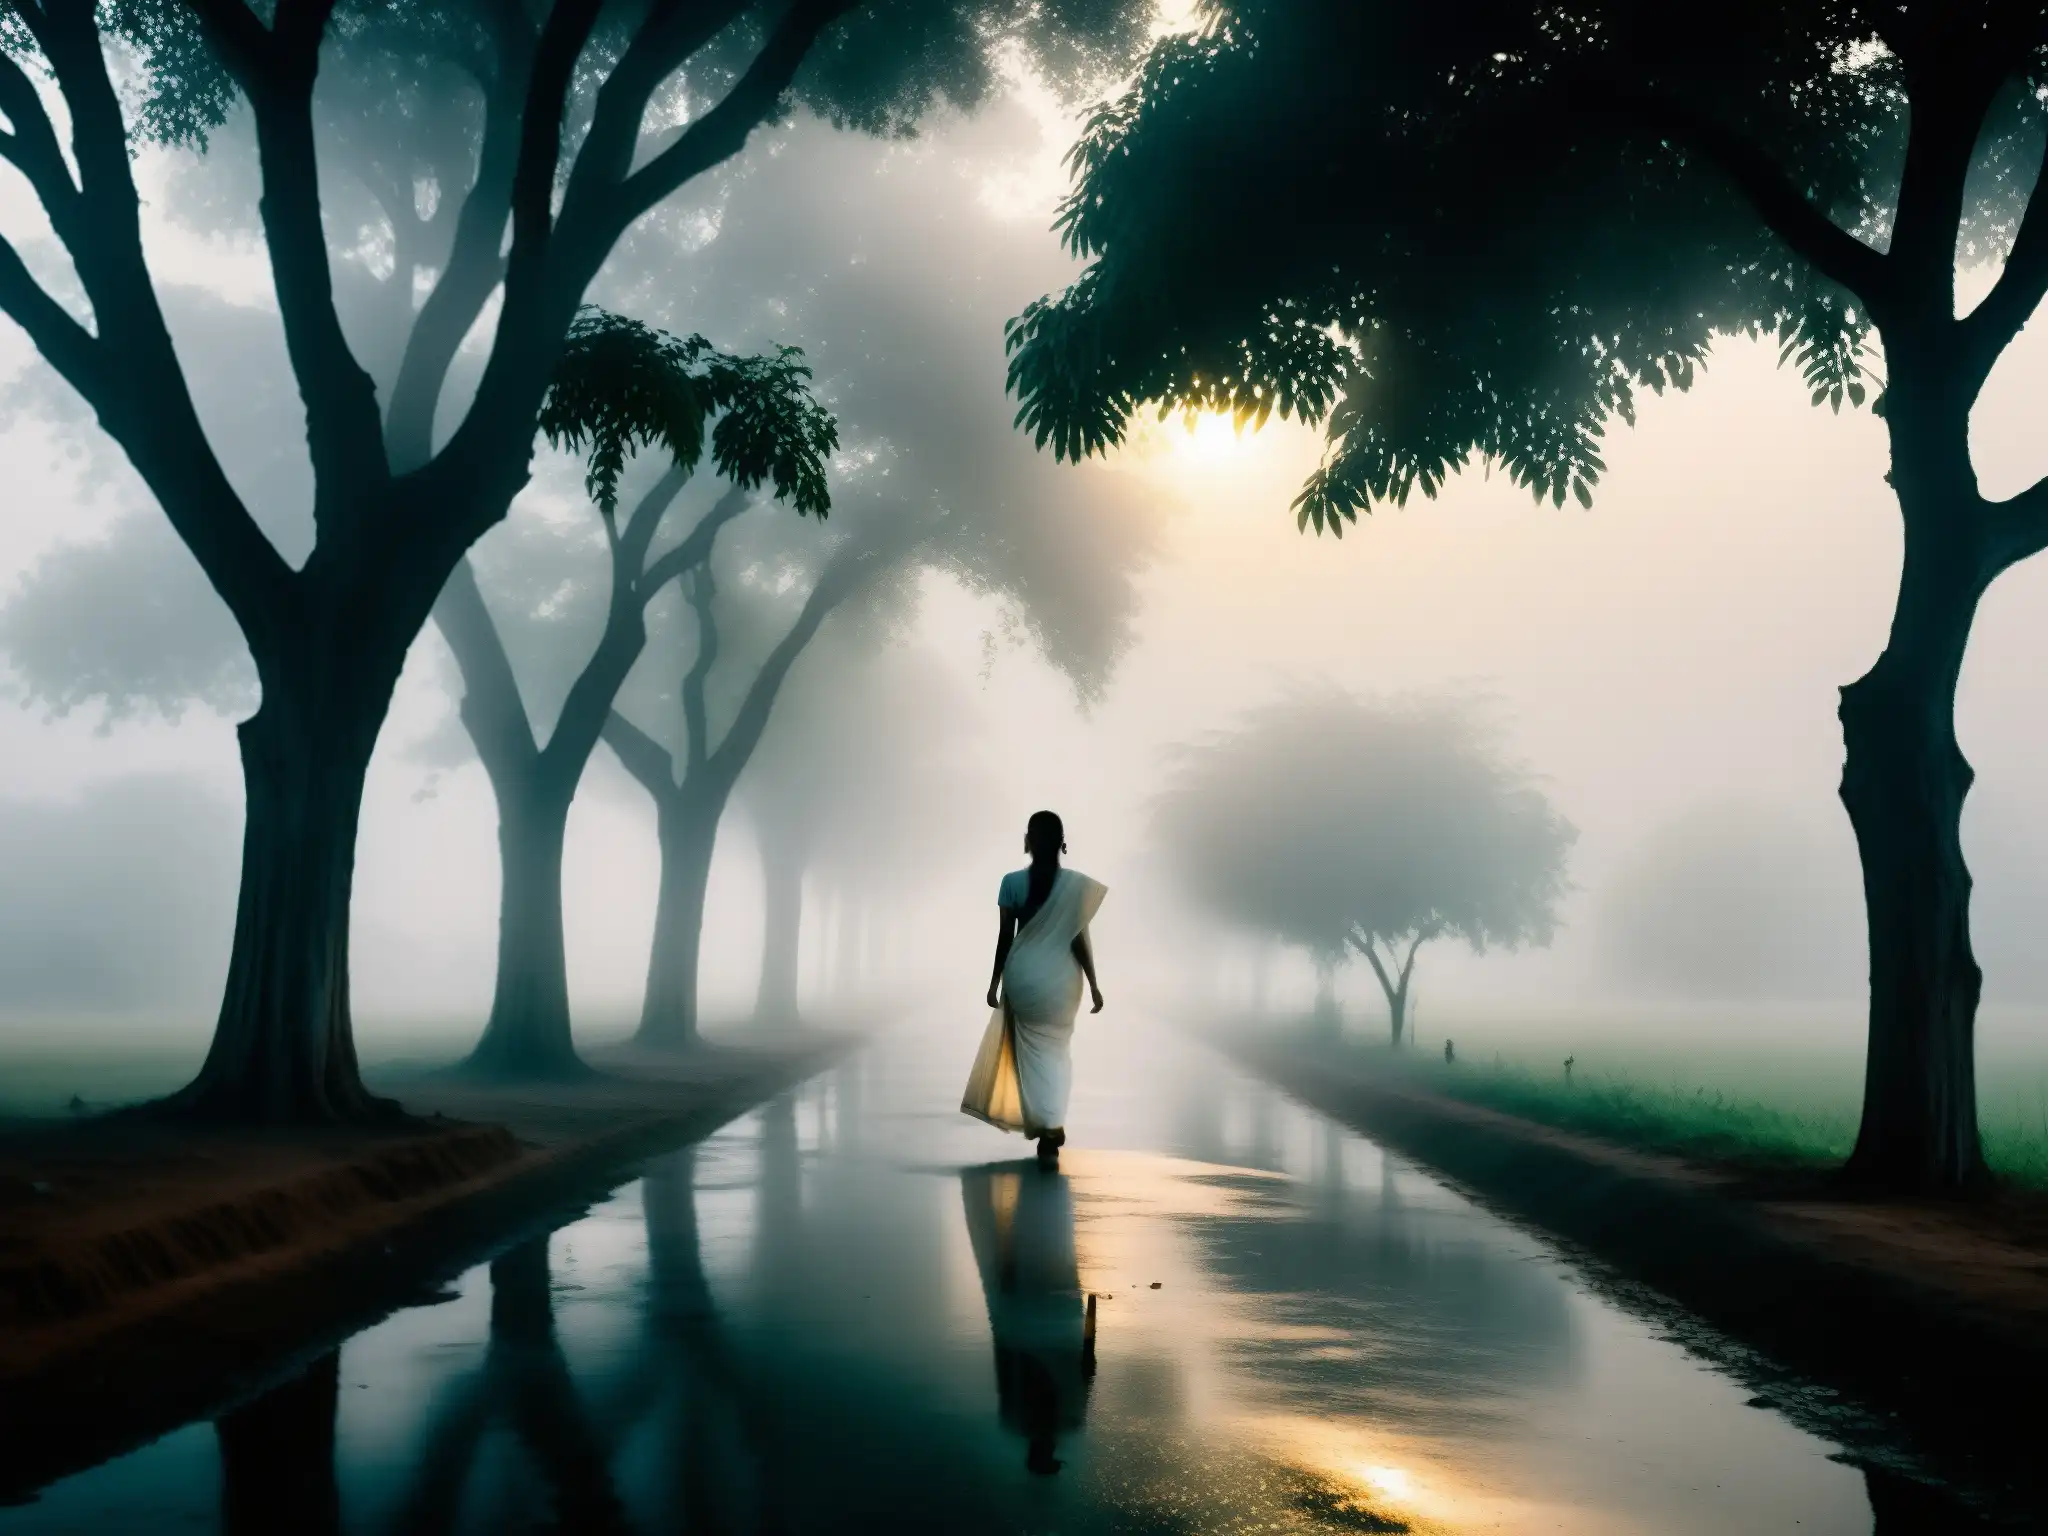 Una misteriosa figura femenina de blanco en una neblinosa carretera rural de la India, rodeada de una atmósfera etérea